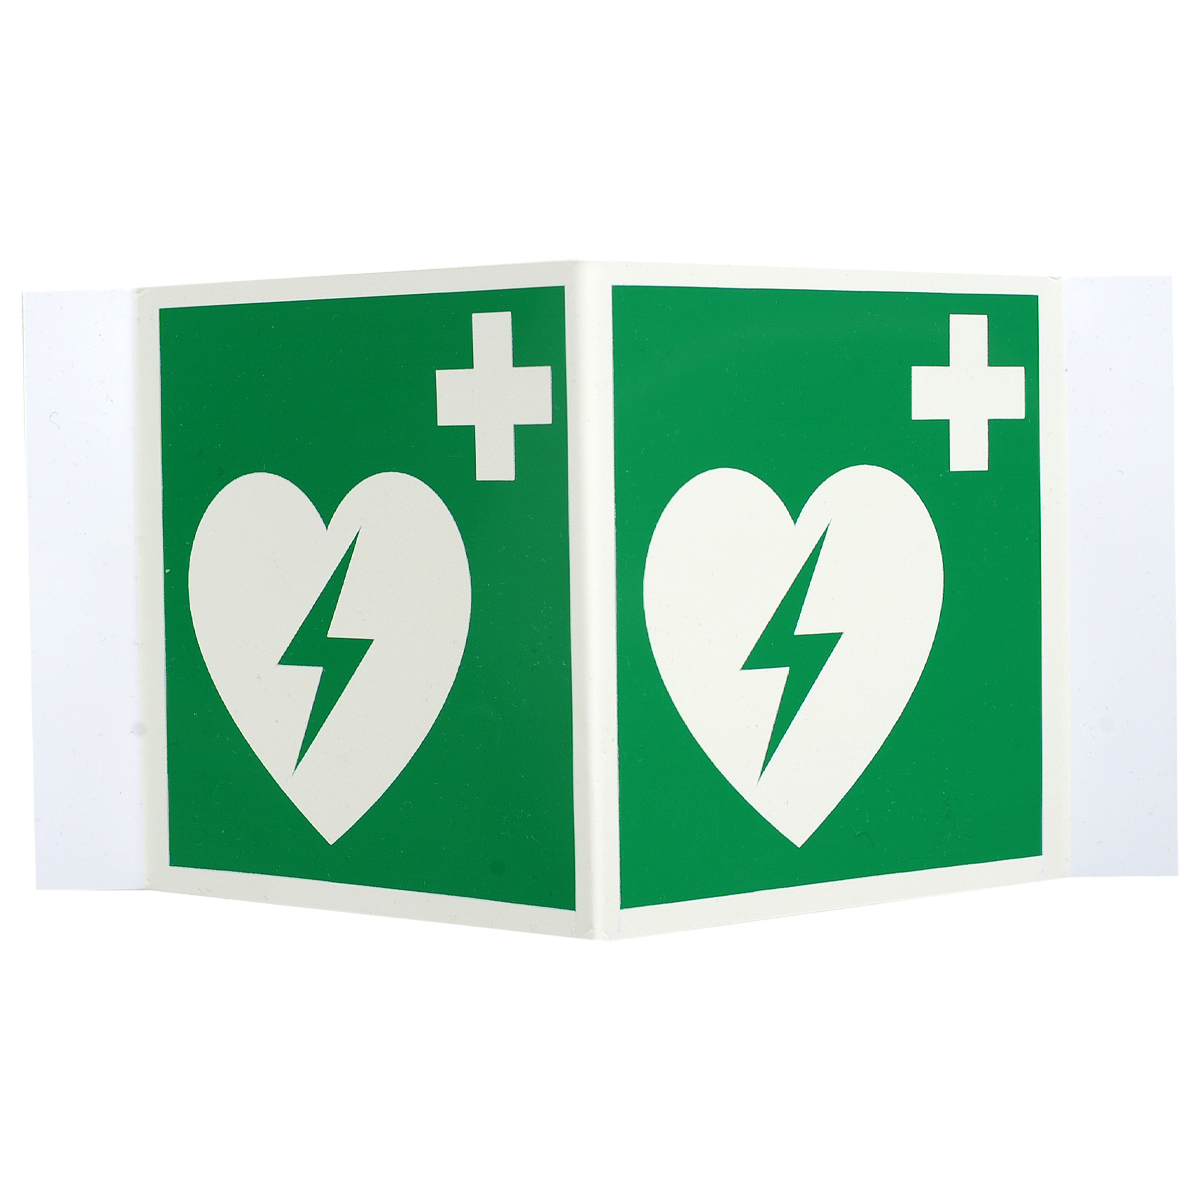 Winkelschild "Defibrillator" aus Kunststoff